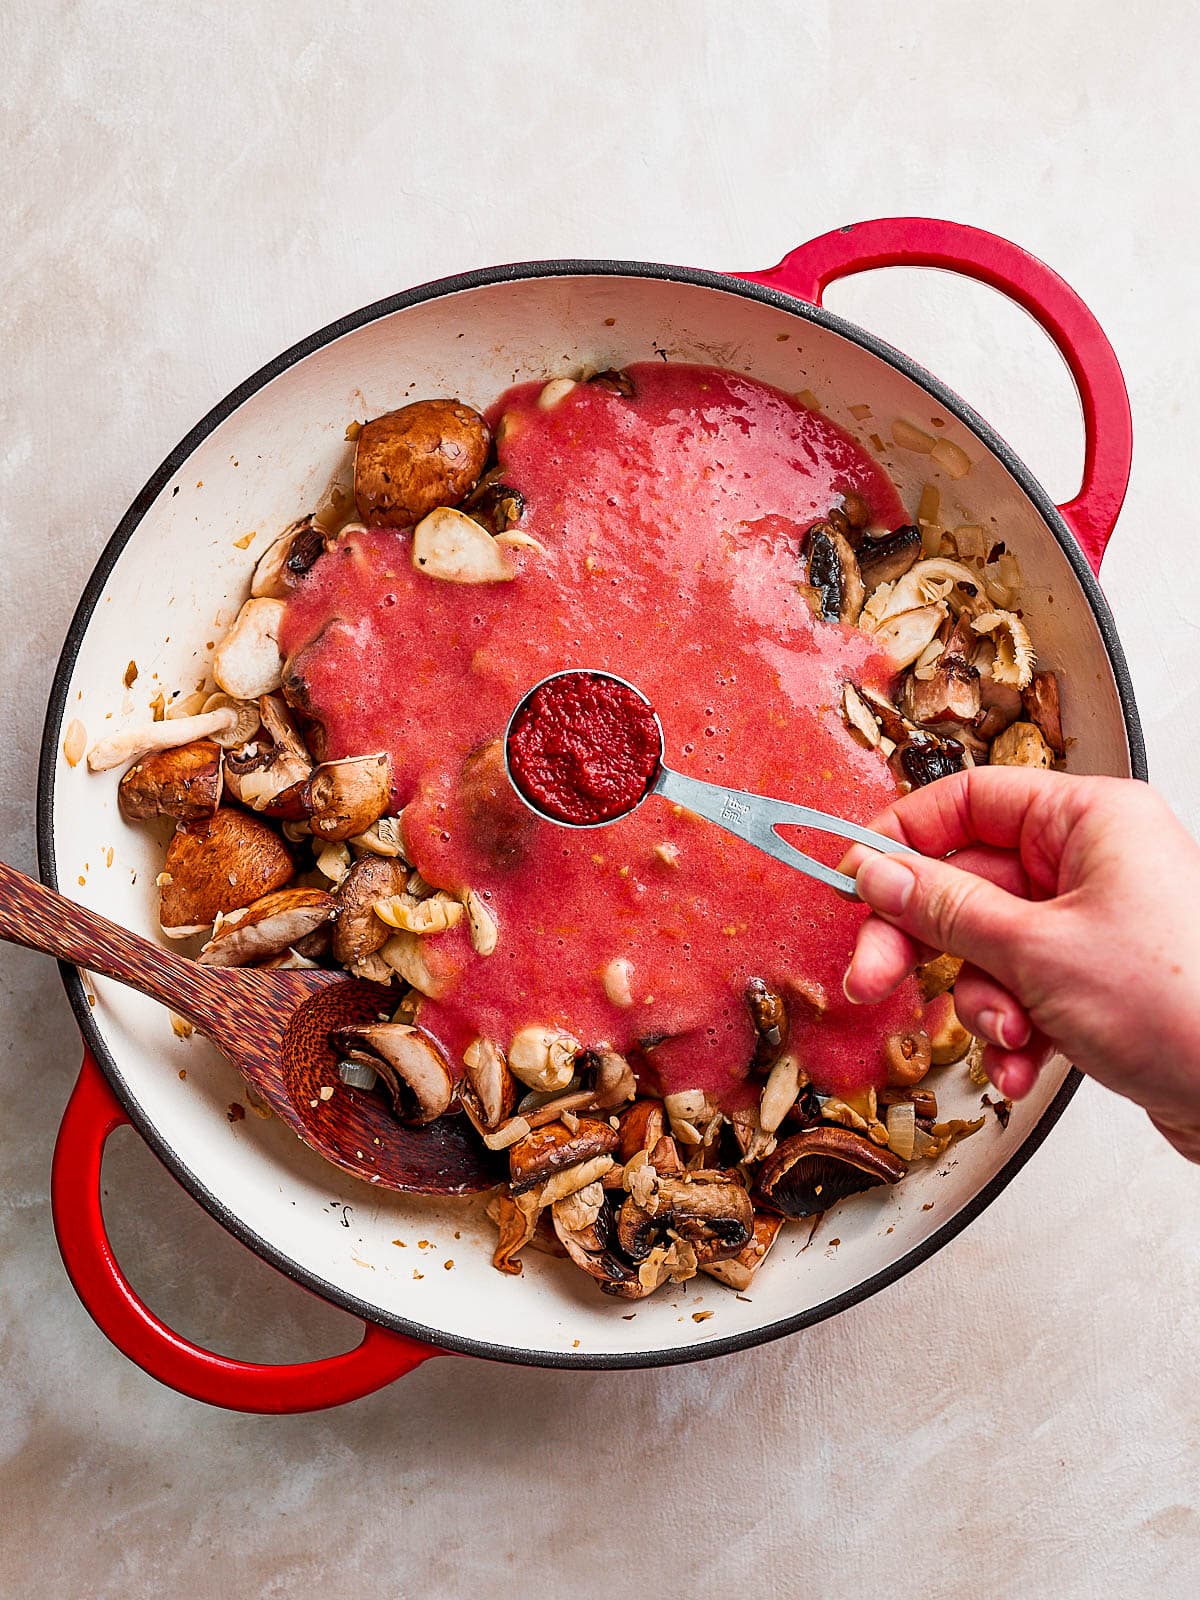 Adding the tomato paste to the pan